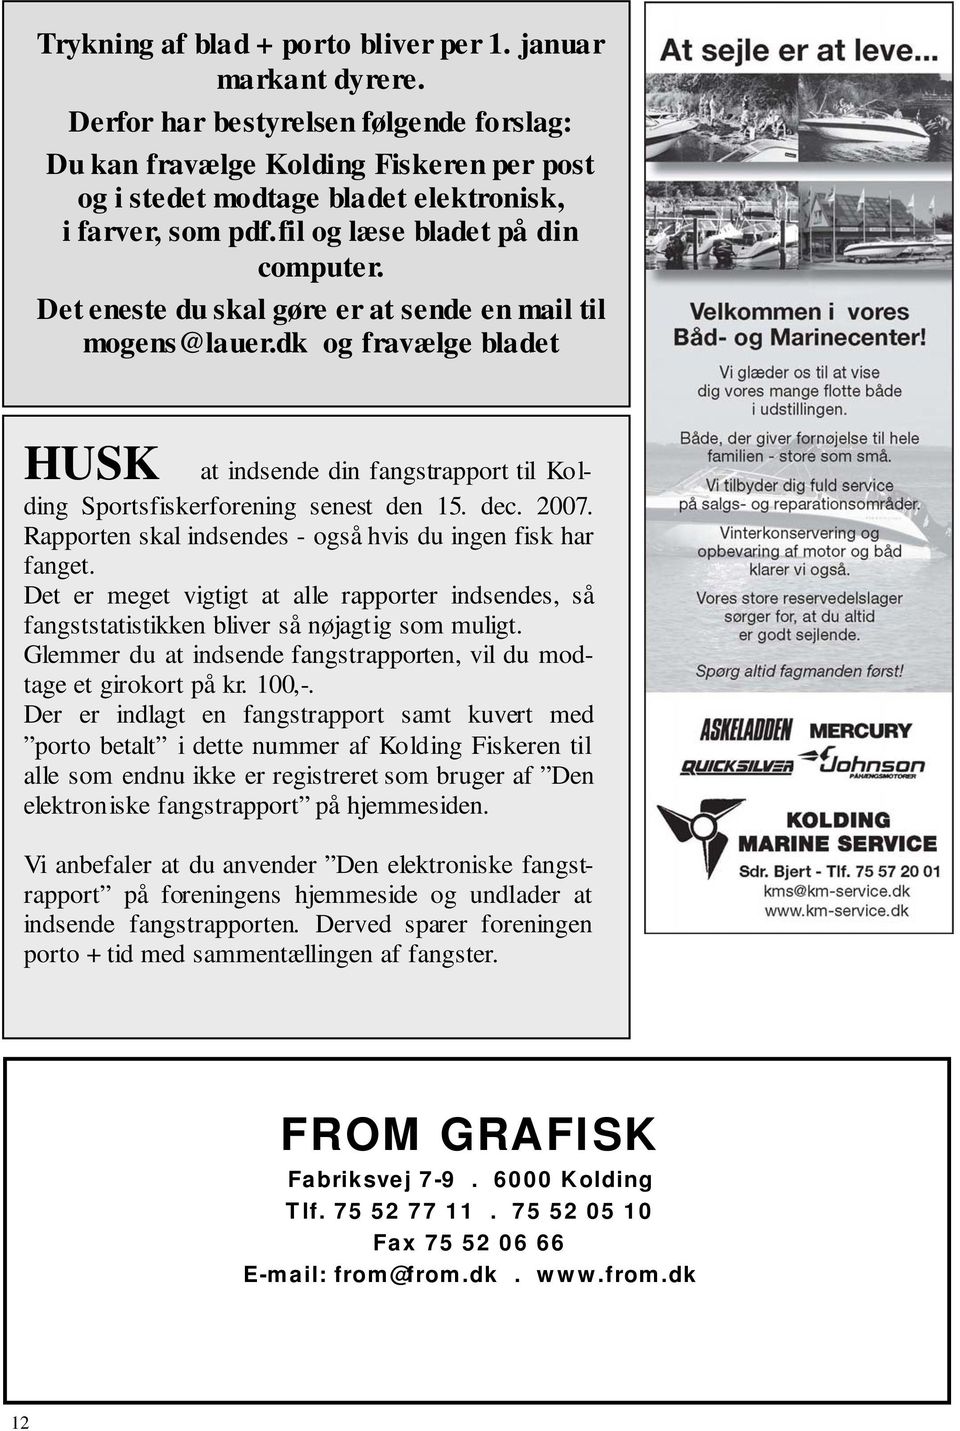 Det eneste du skal gøre er at sende en mail til mogens@lauer.dk og fravælge bladet HUSK at indsende din fangstrapport til Kolding Sportsfiskerforening senest den 15. dec. 2007.